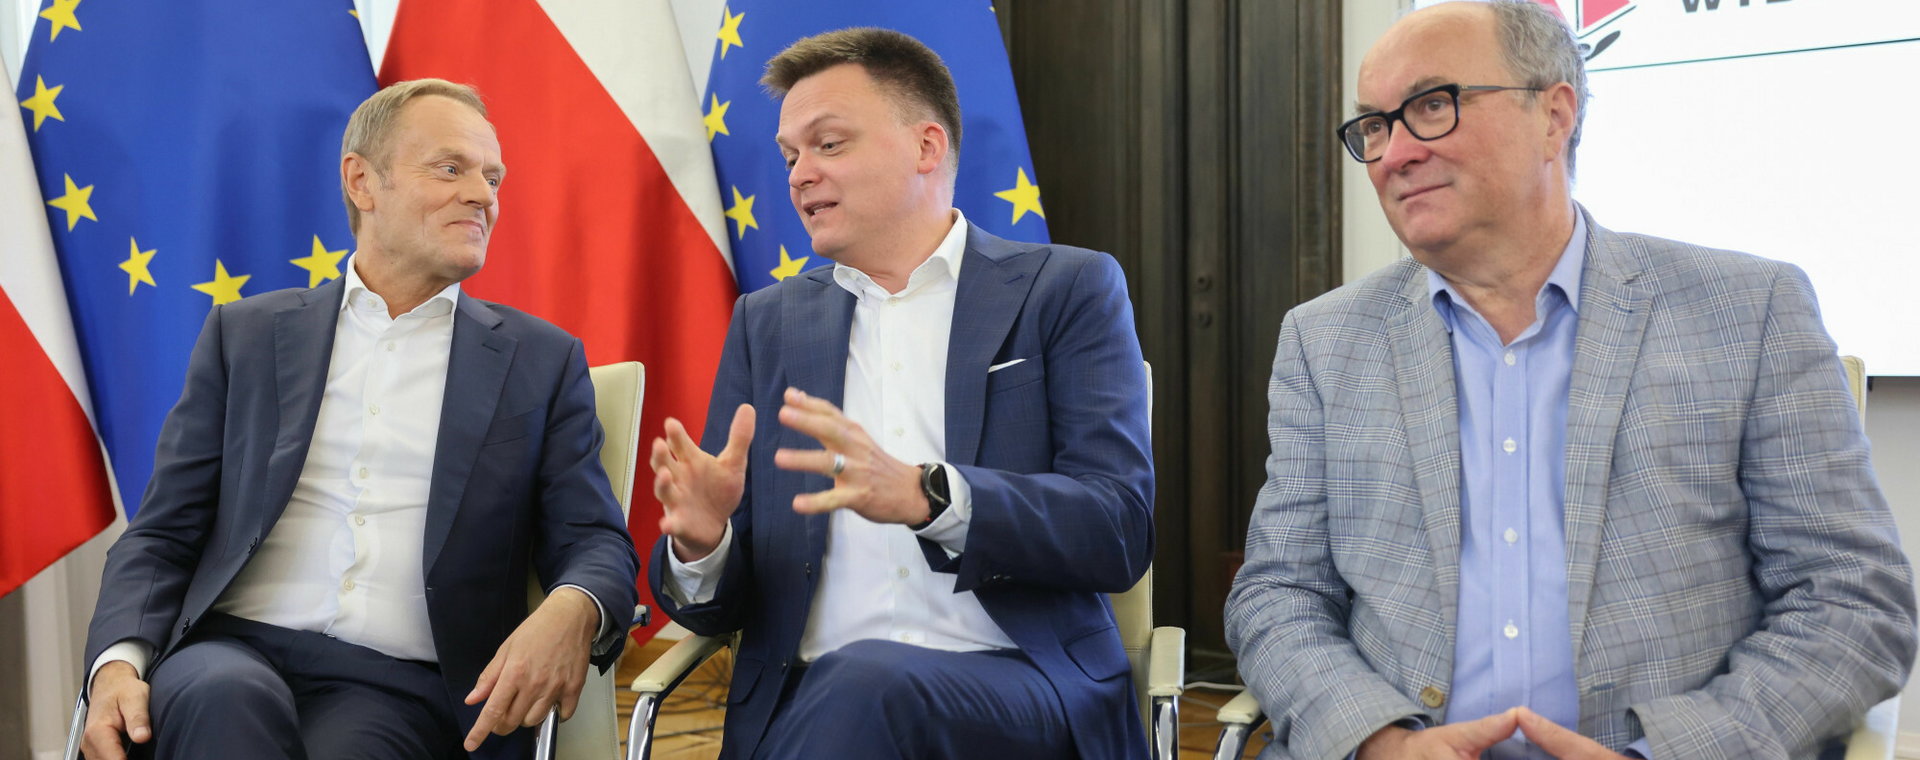 Liderzy partii opozycyjnych w Polsce: Donald Tusk, Szymon Hołownia i Włodzimierz Czarzasty